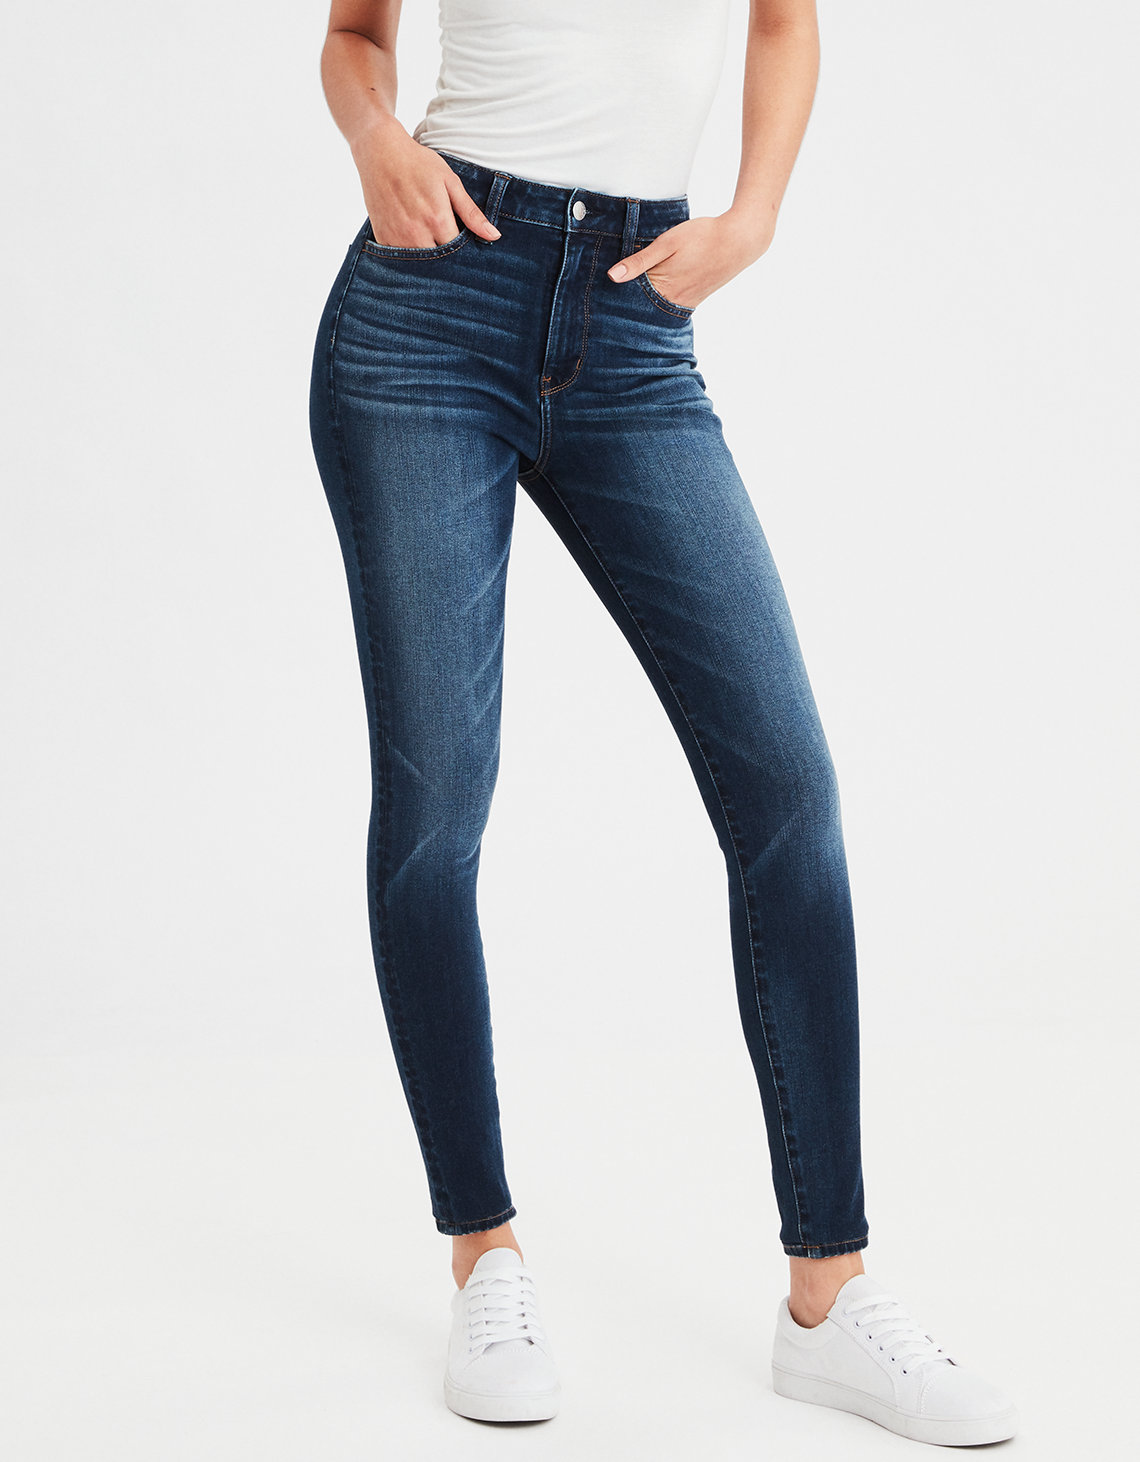 23 Jenis Celana  Jeans  Wanita dan Tips Merawat  Jeans  Agar 